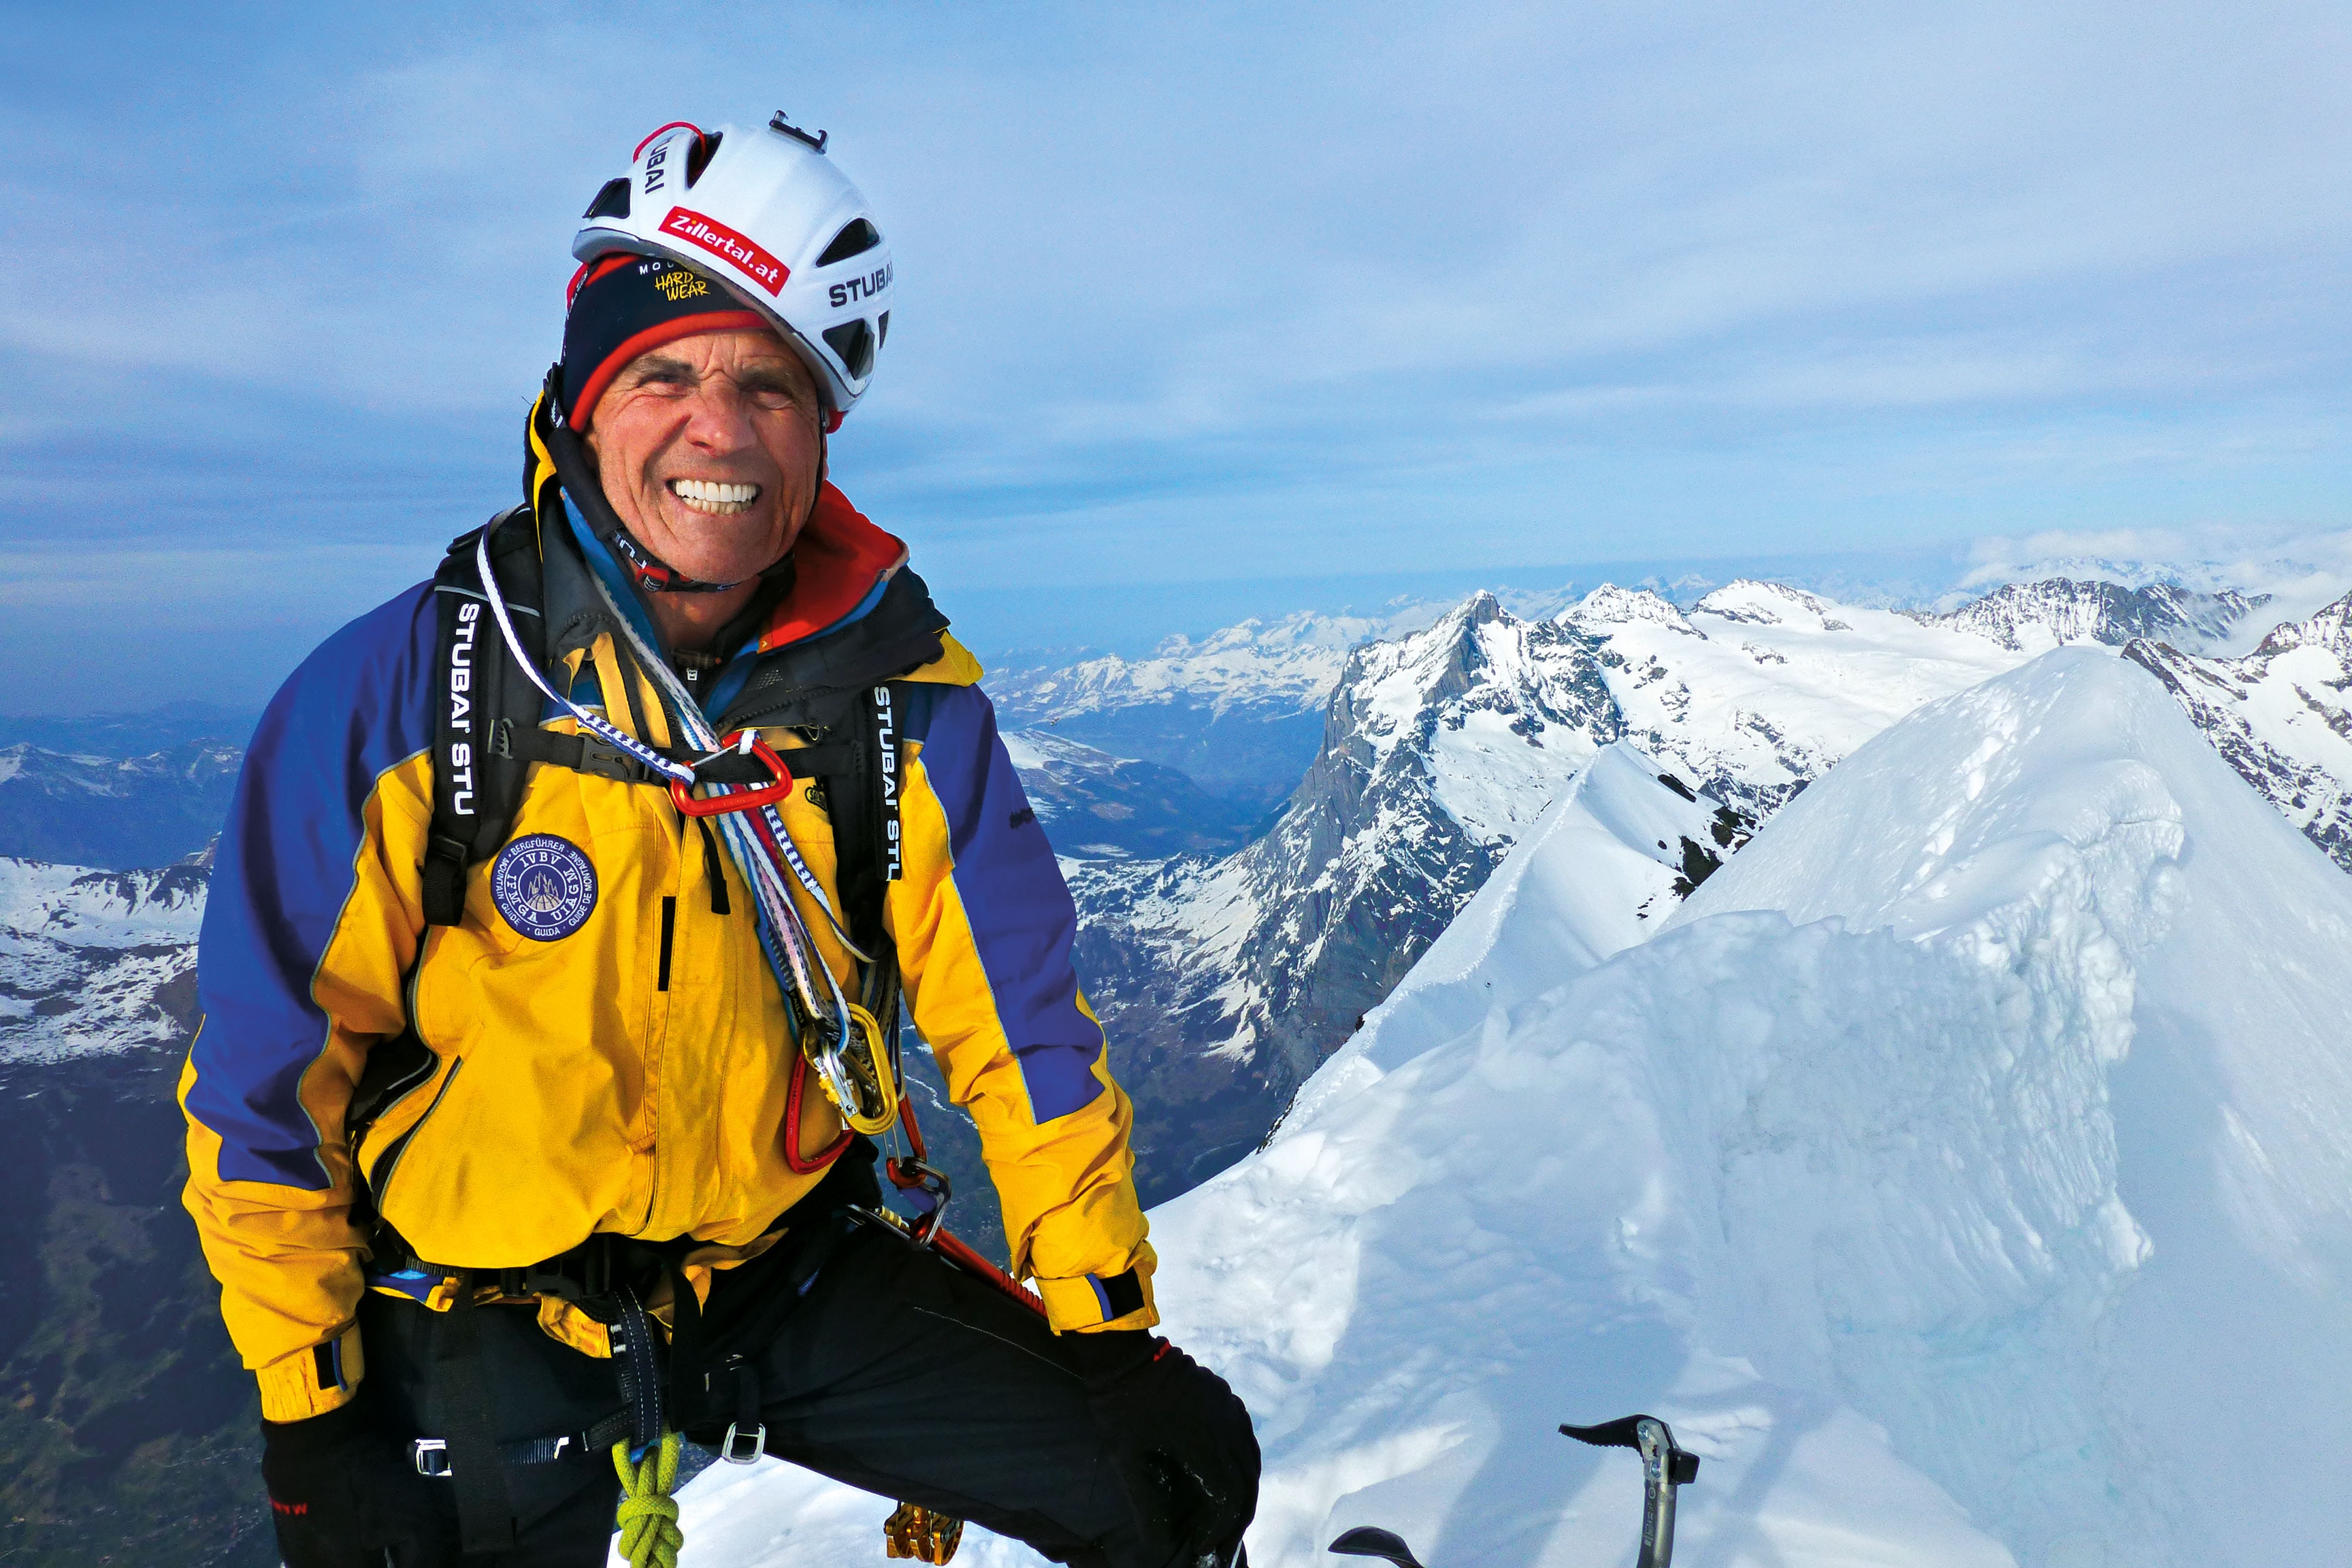 Peter Habeler am Eiger-Gipfel in der Schweiz